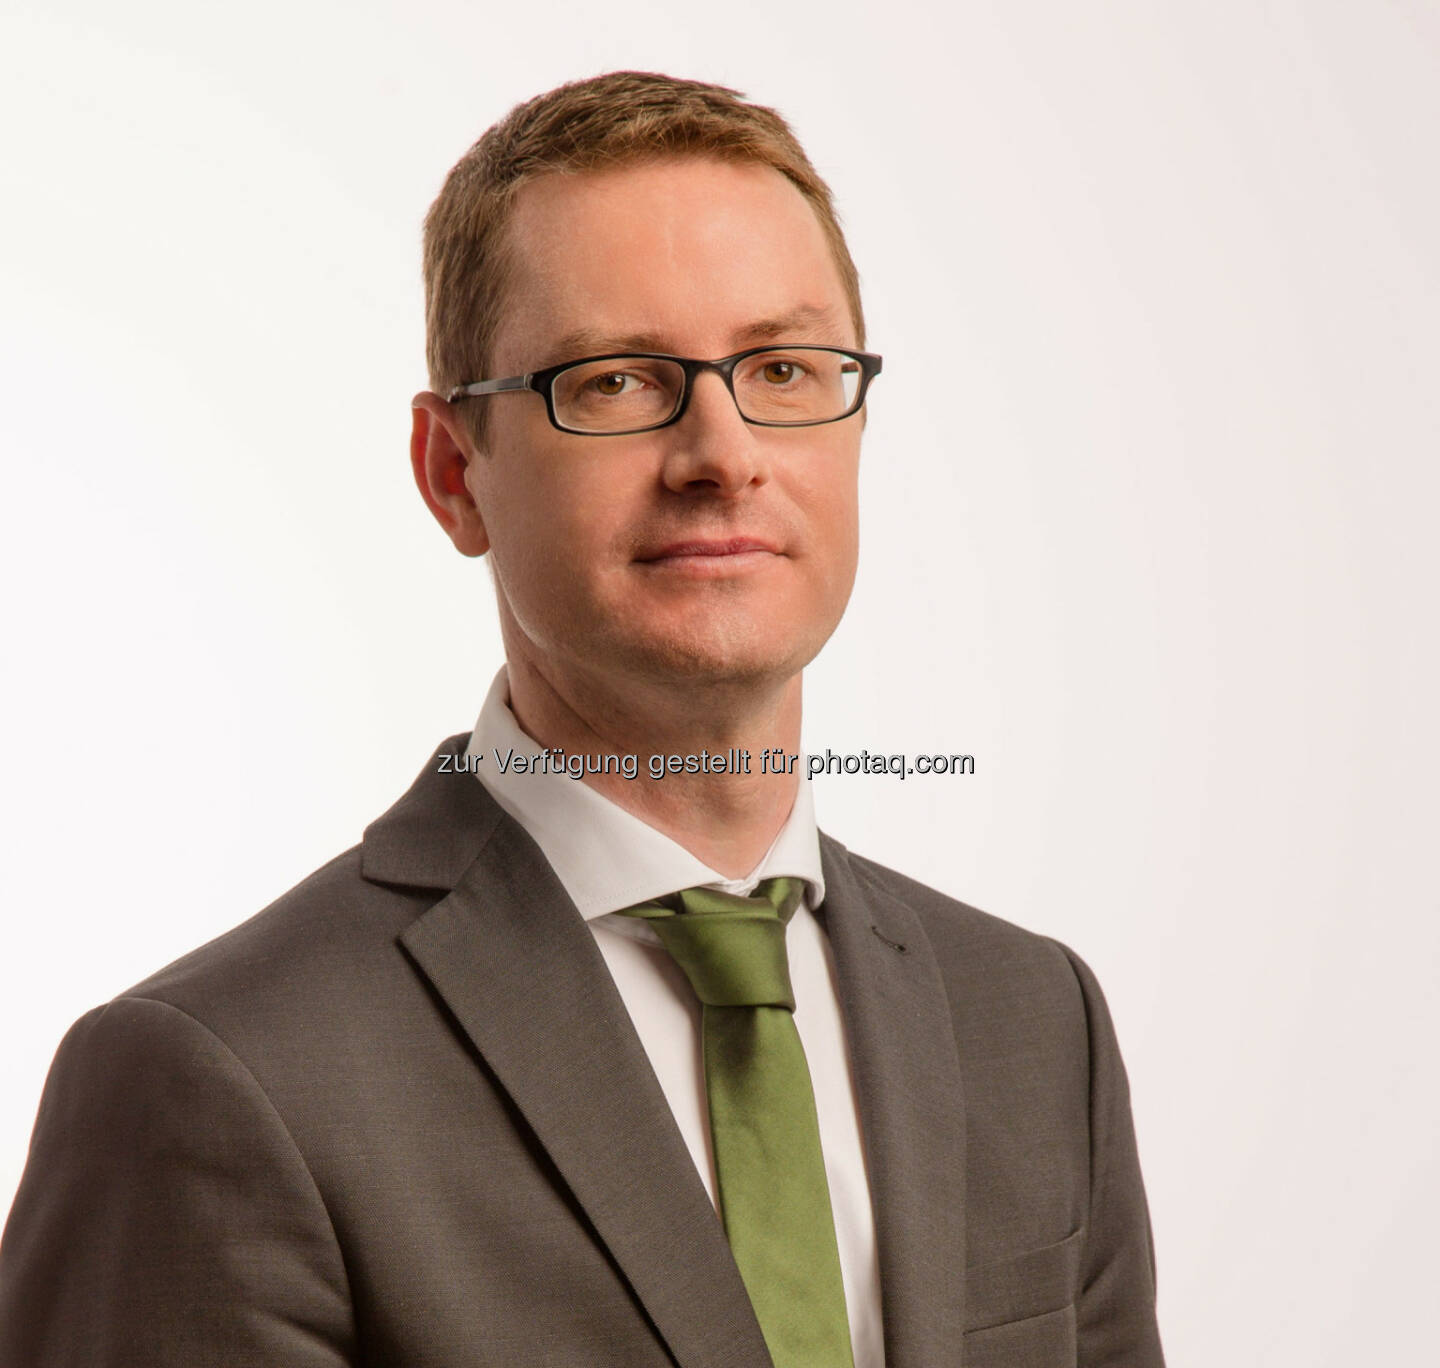 Christian Kreuzer übernimmt ab 1. April 2014 die Leitung Presse- und Öffentlichkeitsarbeit bei der Wiener Städtischen Versicherung